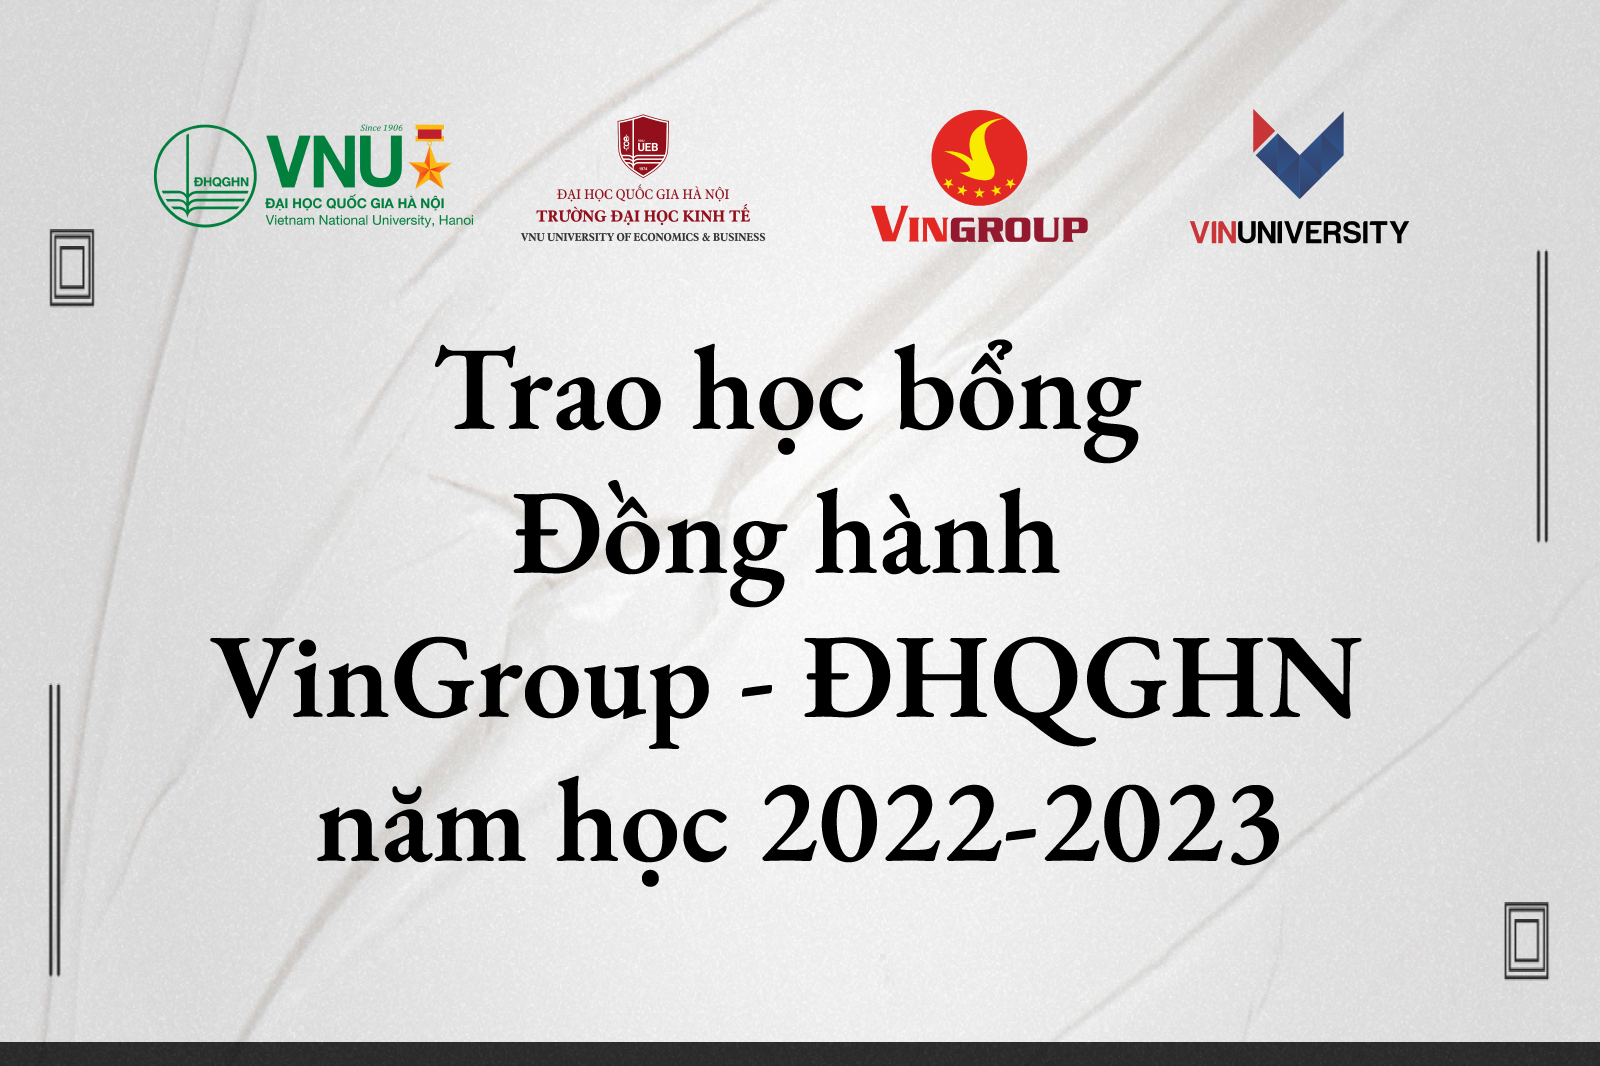 Trao học bổng Đồng hành VinGroup - ĐHQGHN năm học 2022-2023 cho sinh viên UEB